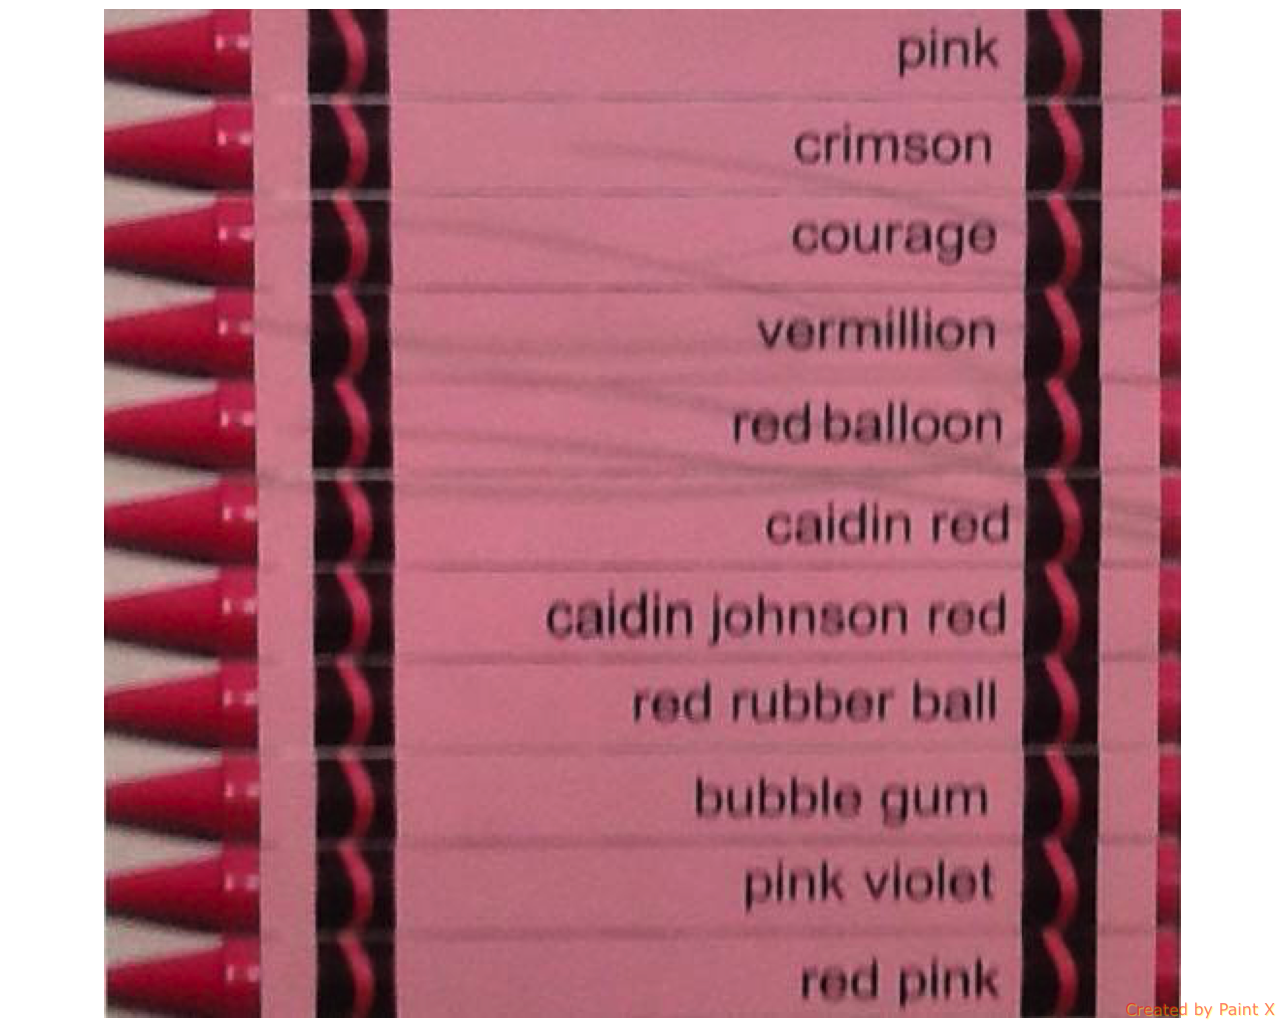 Crayon Names 